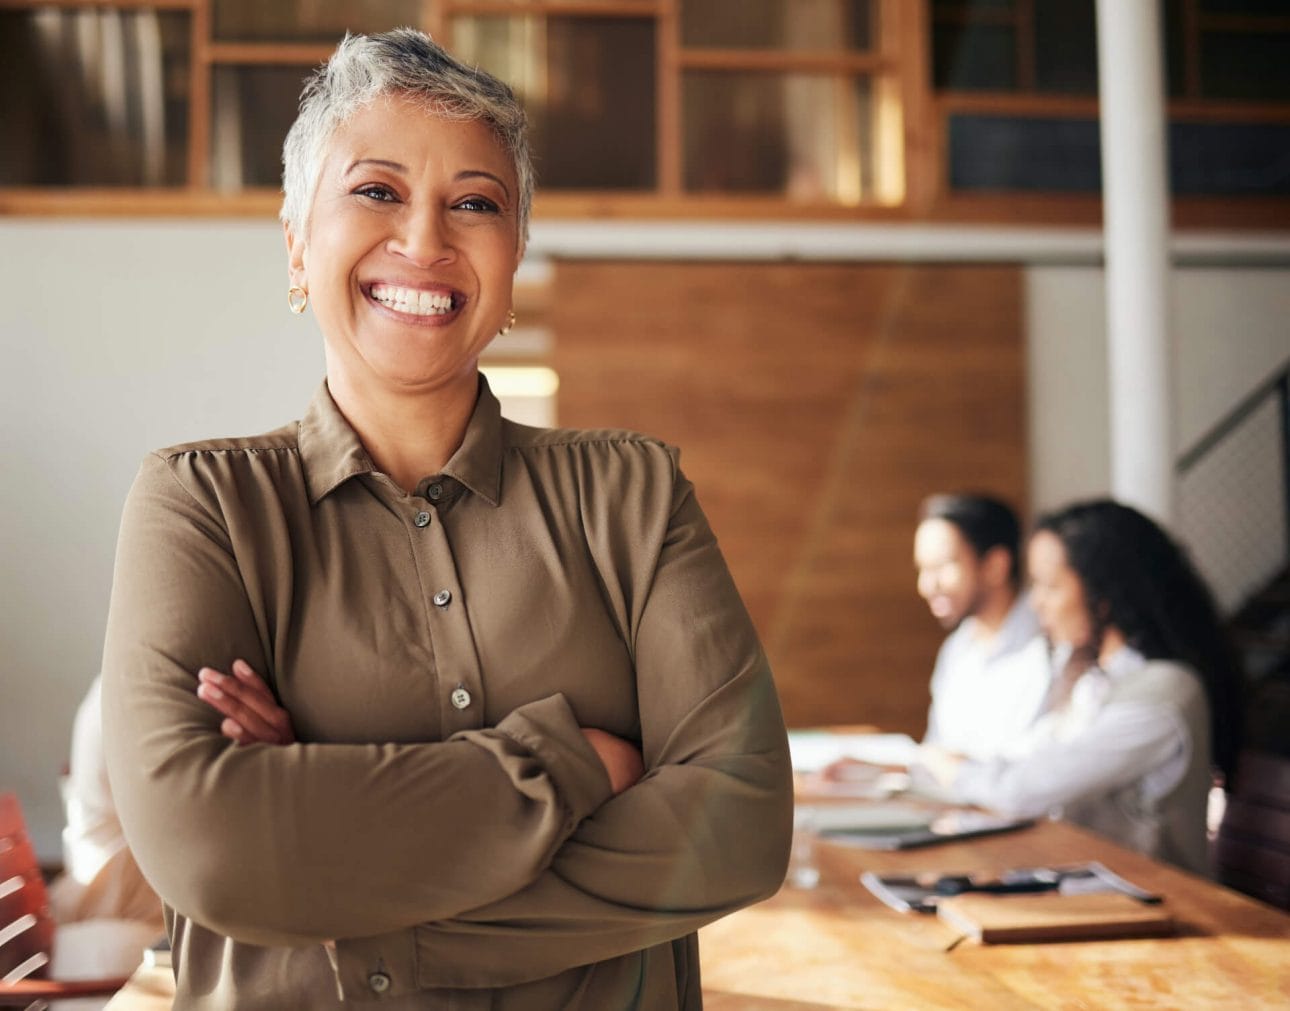 Eine Verantwortungsträgerin steht mit einer selbstbewussten Körperhaltung lächelnd in einem Büro, während ihre Mitarbeiterinnen und Mitarbeiter im Hintergrund am Meetingtisch arbeiten